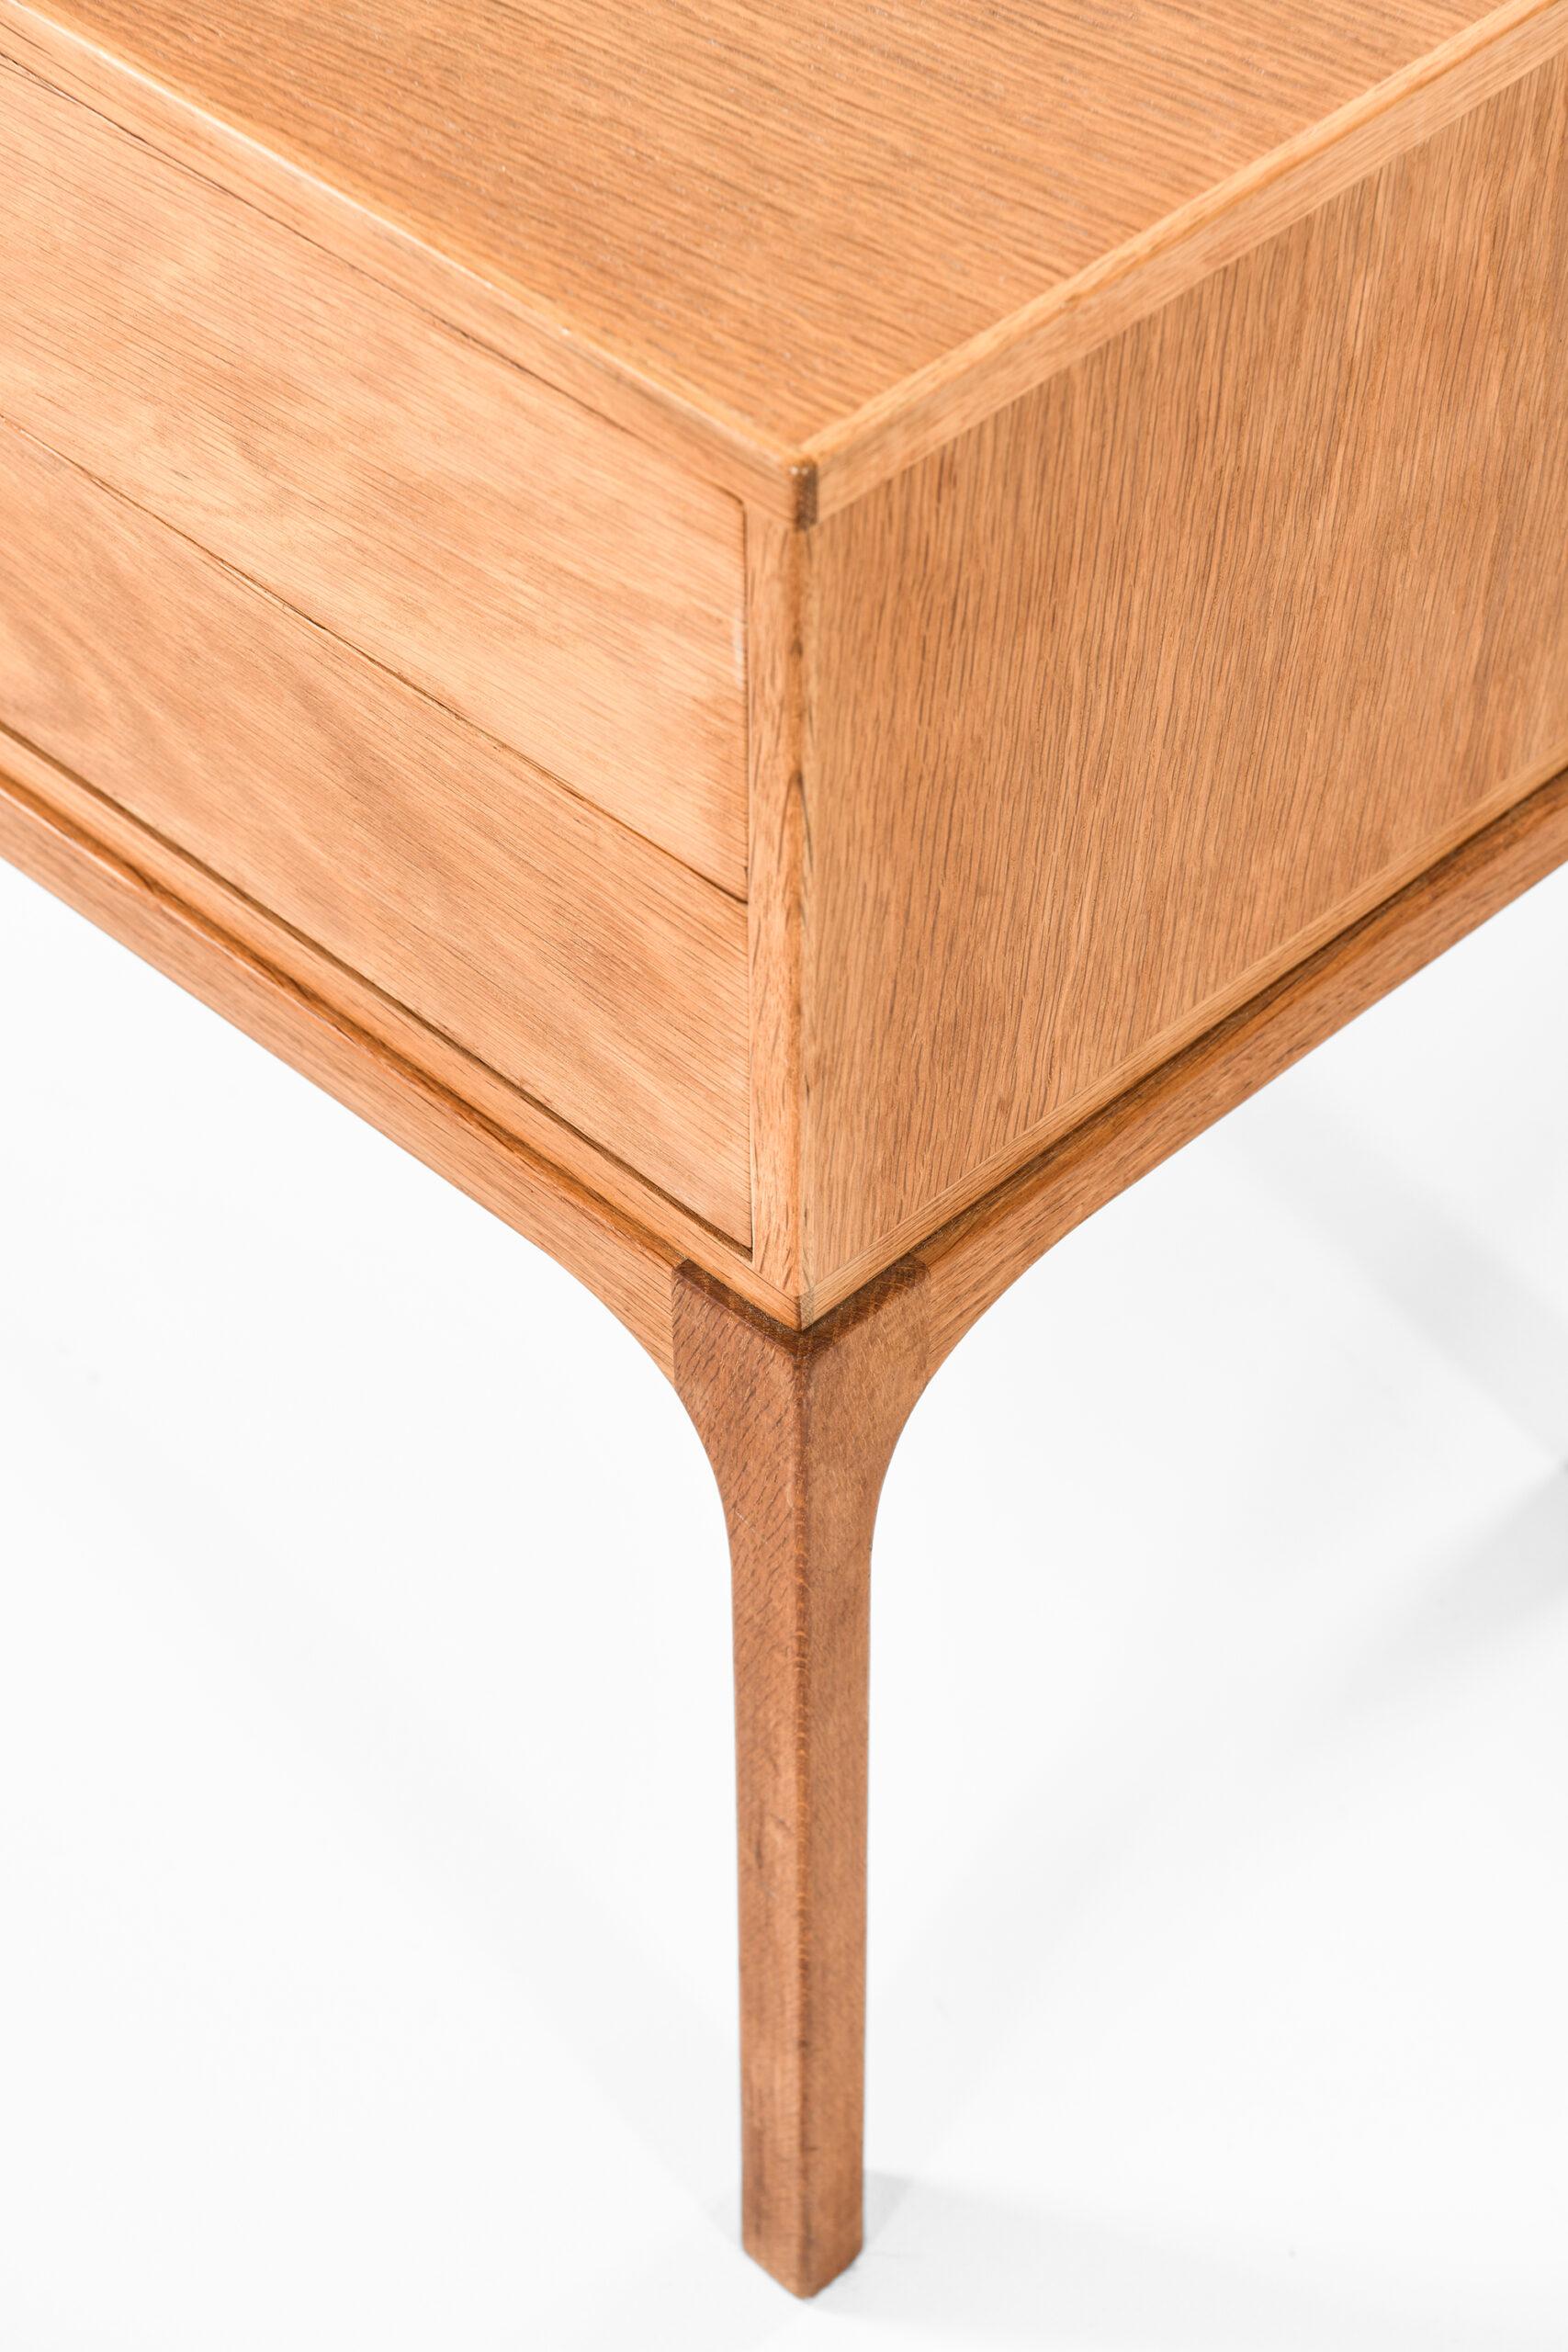 Mid-20th Century Kai Kristiansen Bureau / Side Table Model 394 by Aksel Kjersgaard in Denmark For Sale